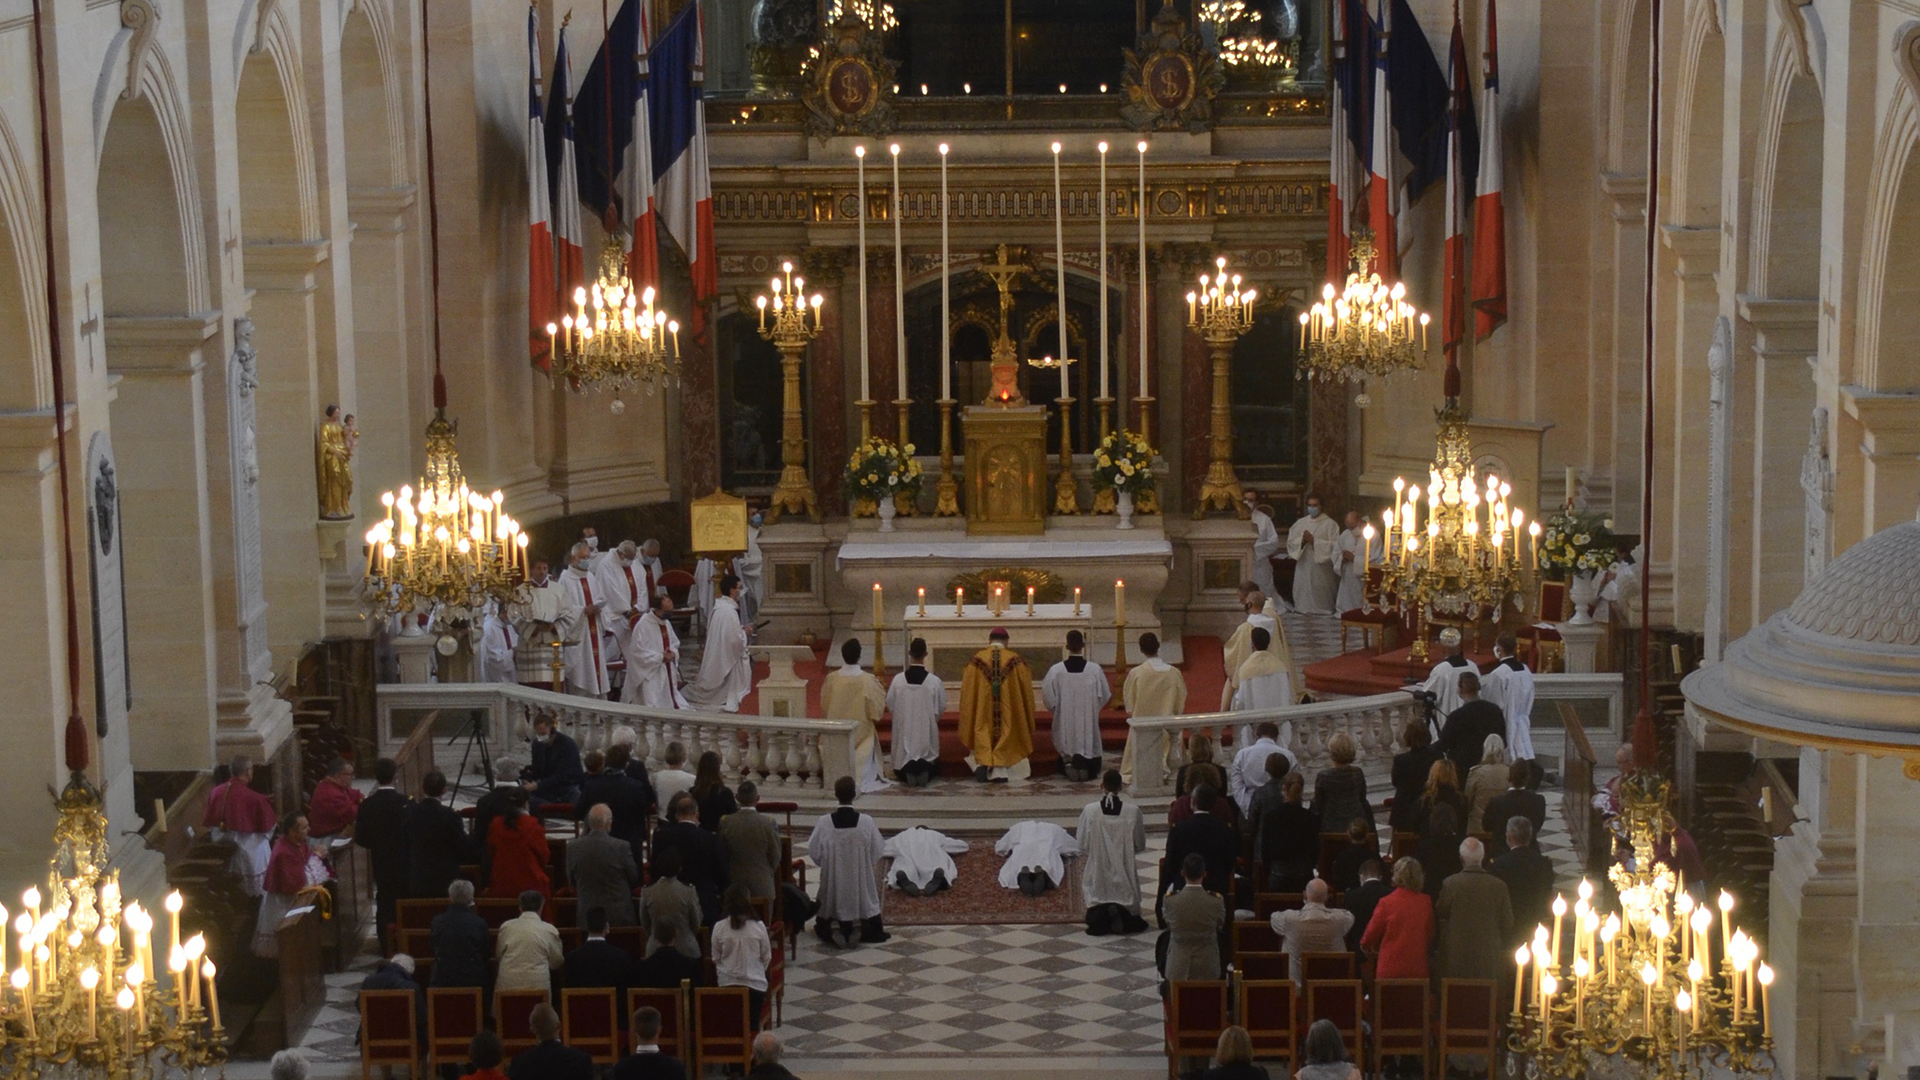 Sacrements, Baptêmes & Mariages - Saint Louis des Français